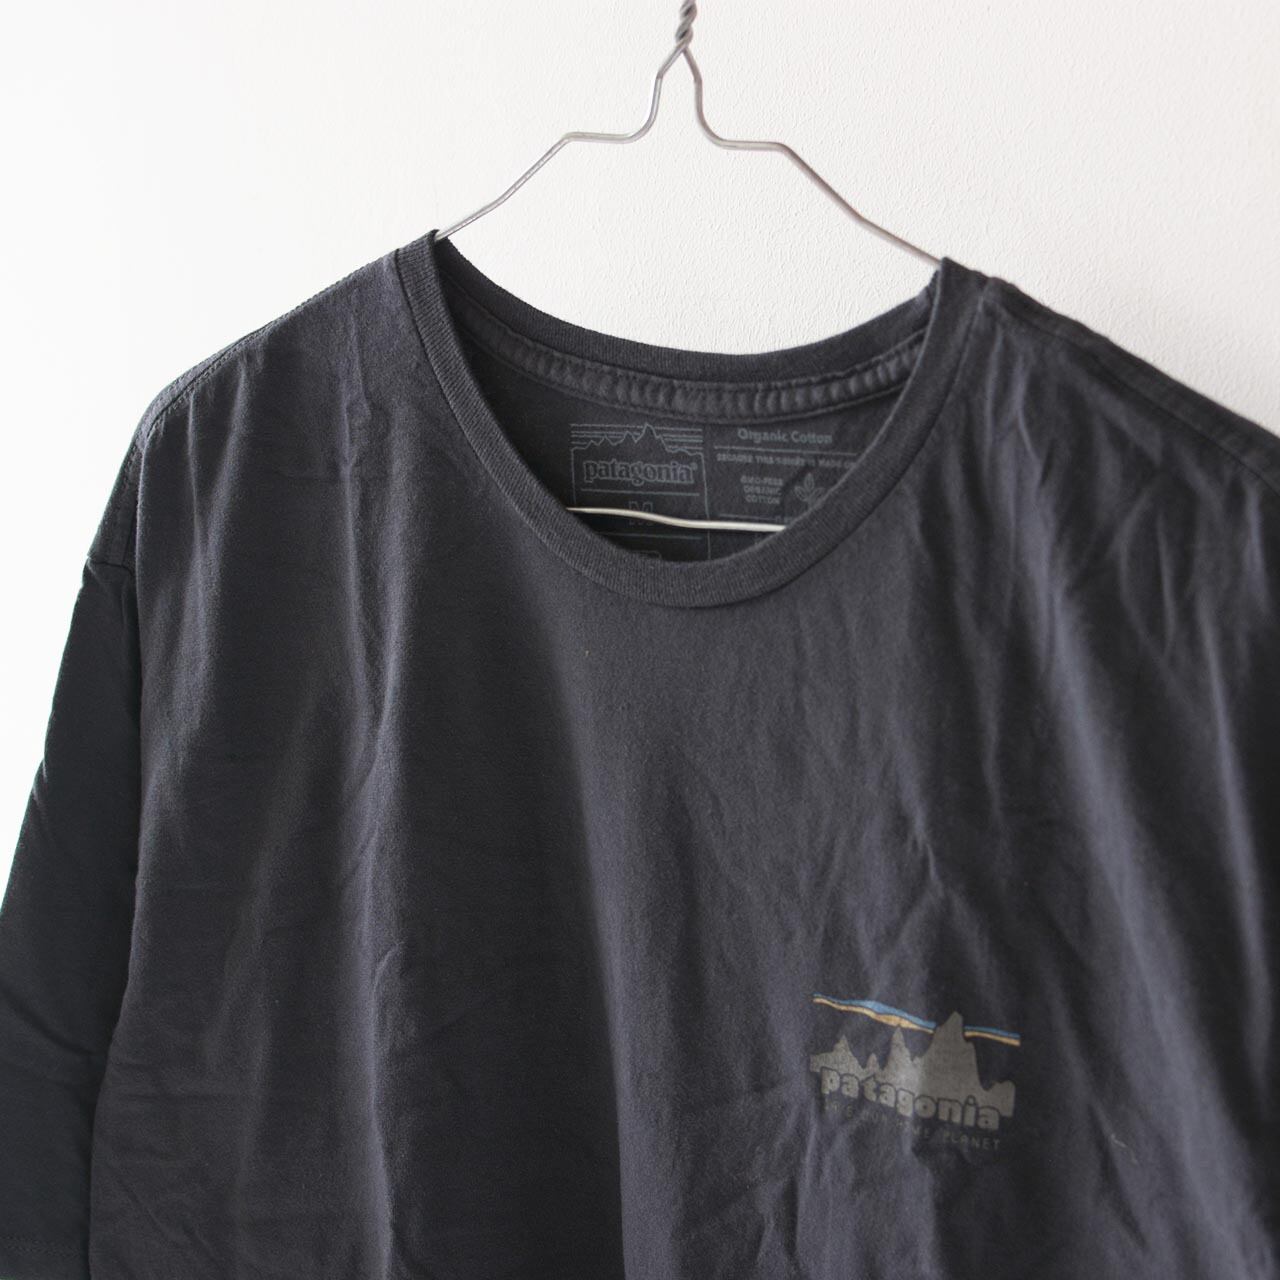 patagonia organic cotton T-shirt 初期モデル